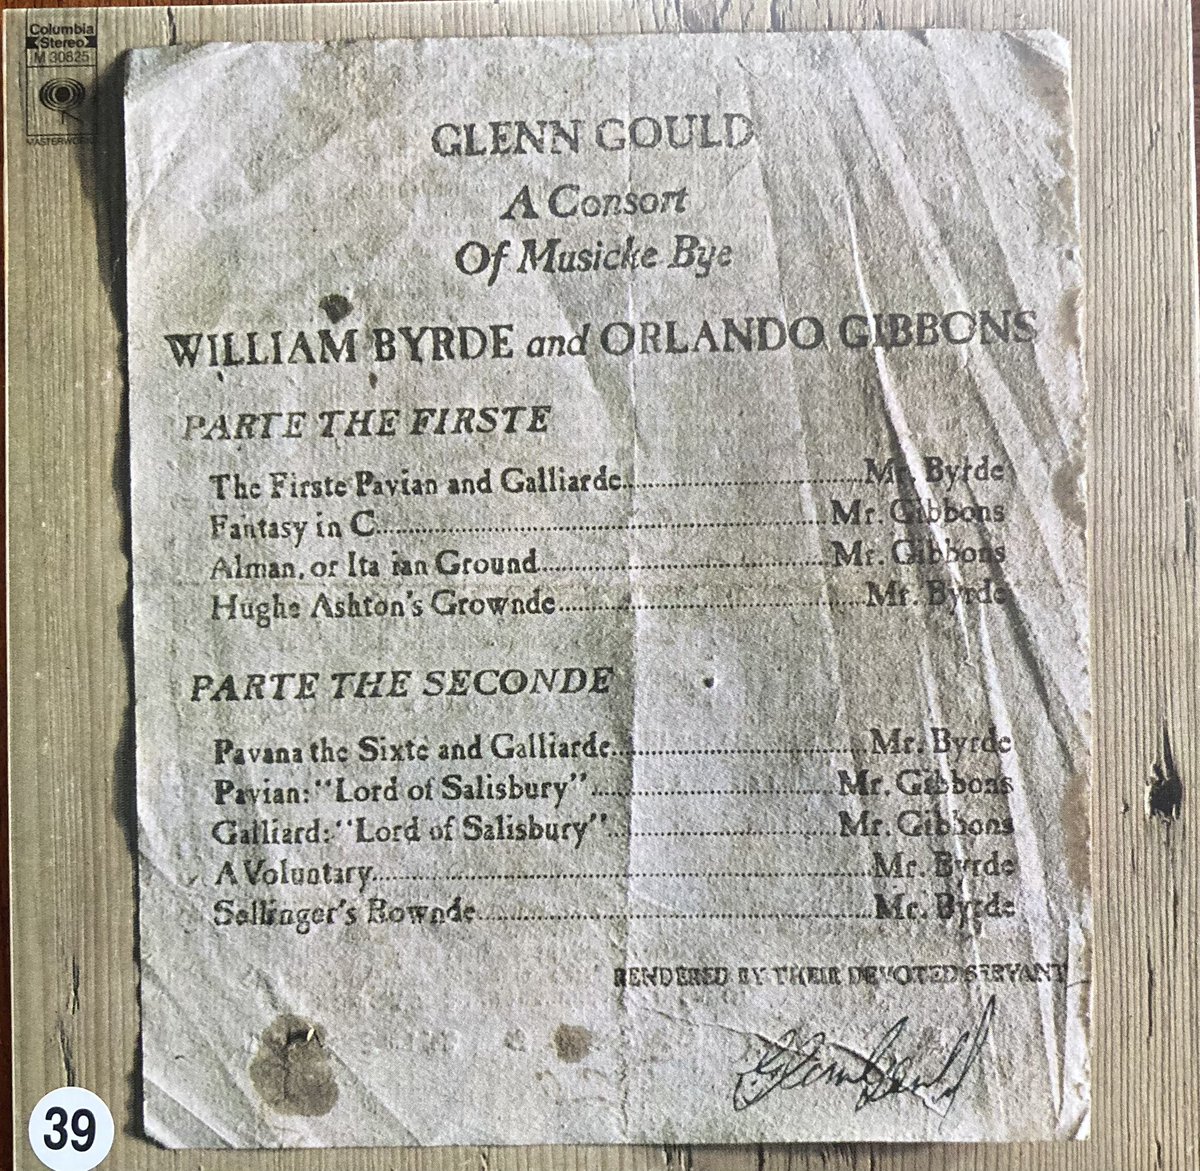 モニクラ、グレン・グールド特集
6日目は、バードの「パヴァーヌとガイヤルド」
初めて聴いた英国ルネサンス期の作品
バロック調とも近く、心落ち着く曲でした。
グールドの命日に聴く意味を感じました。
#ohayomorning 